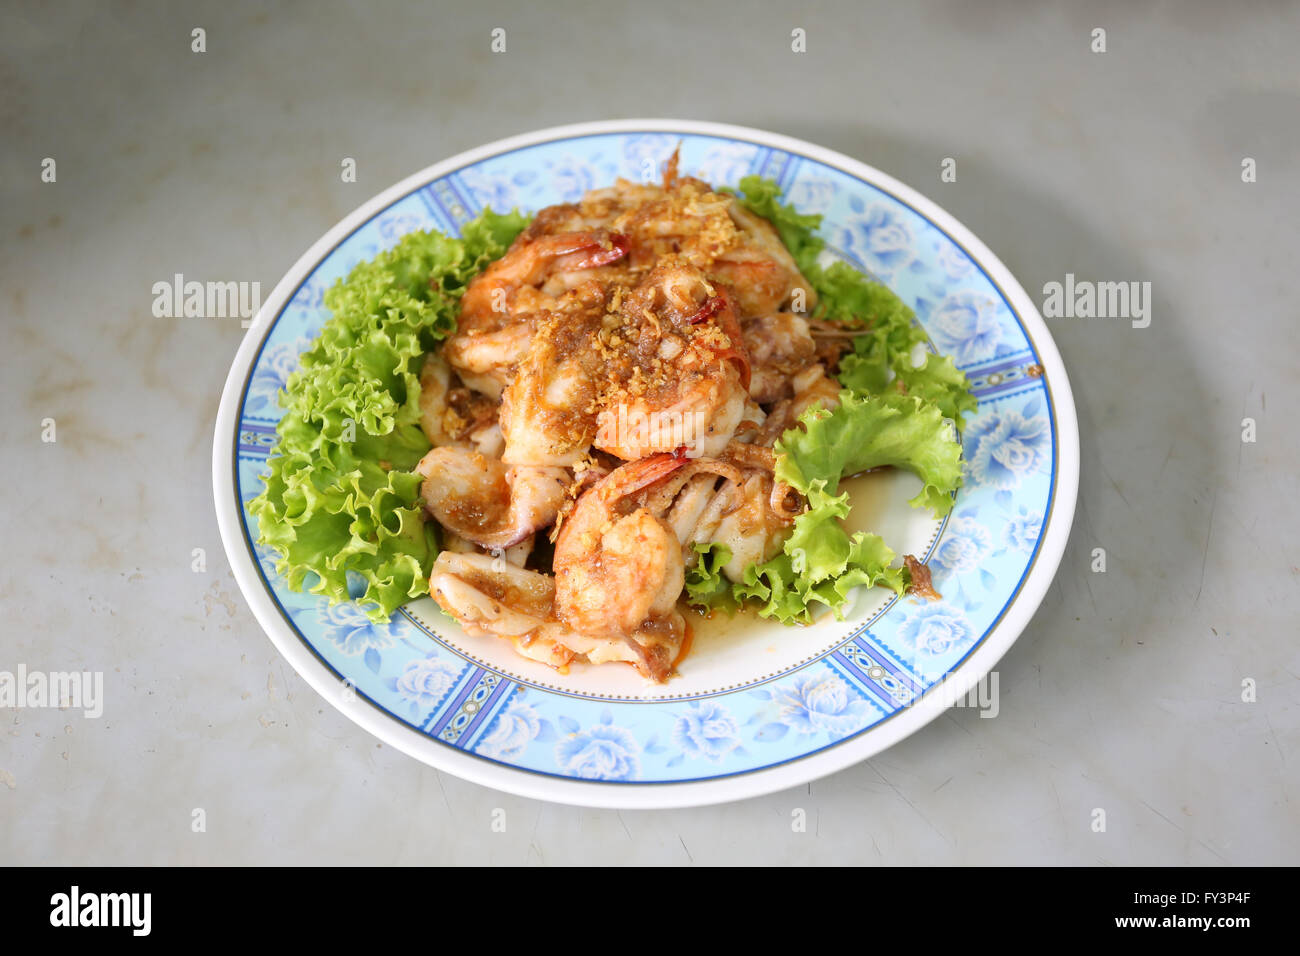 Knoblauch Pfeffer Garnelen in Schale, dies ist ein thailändisches Essen. Stockfoto